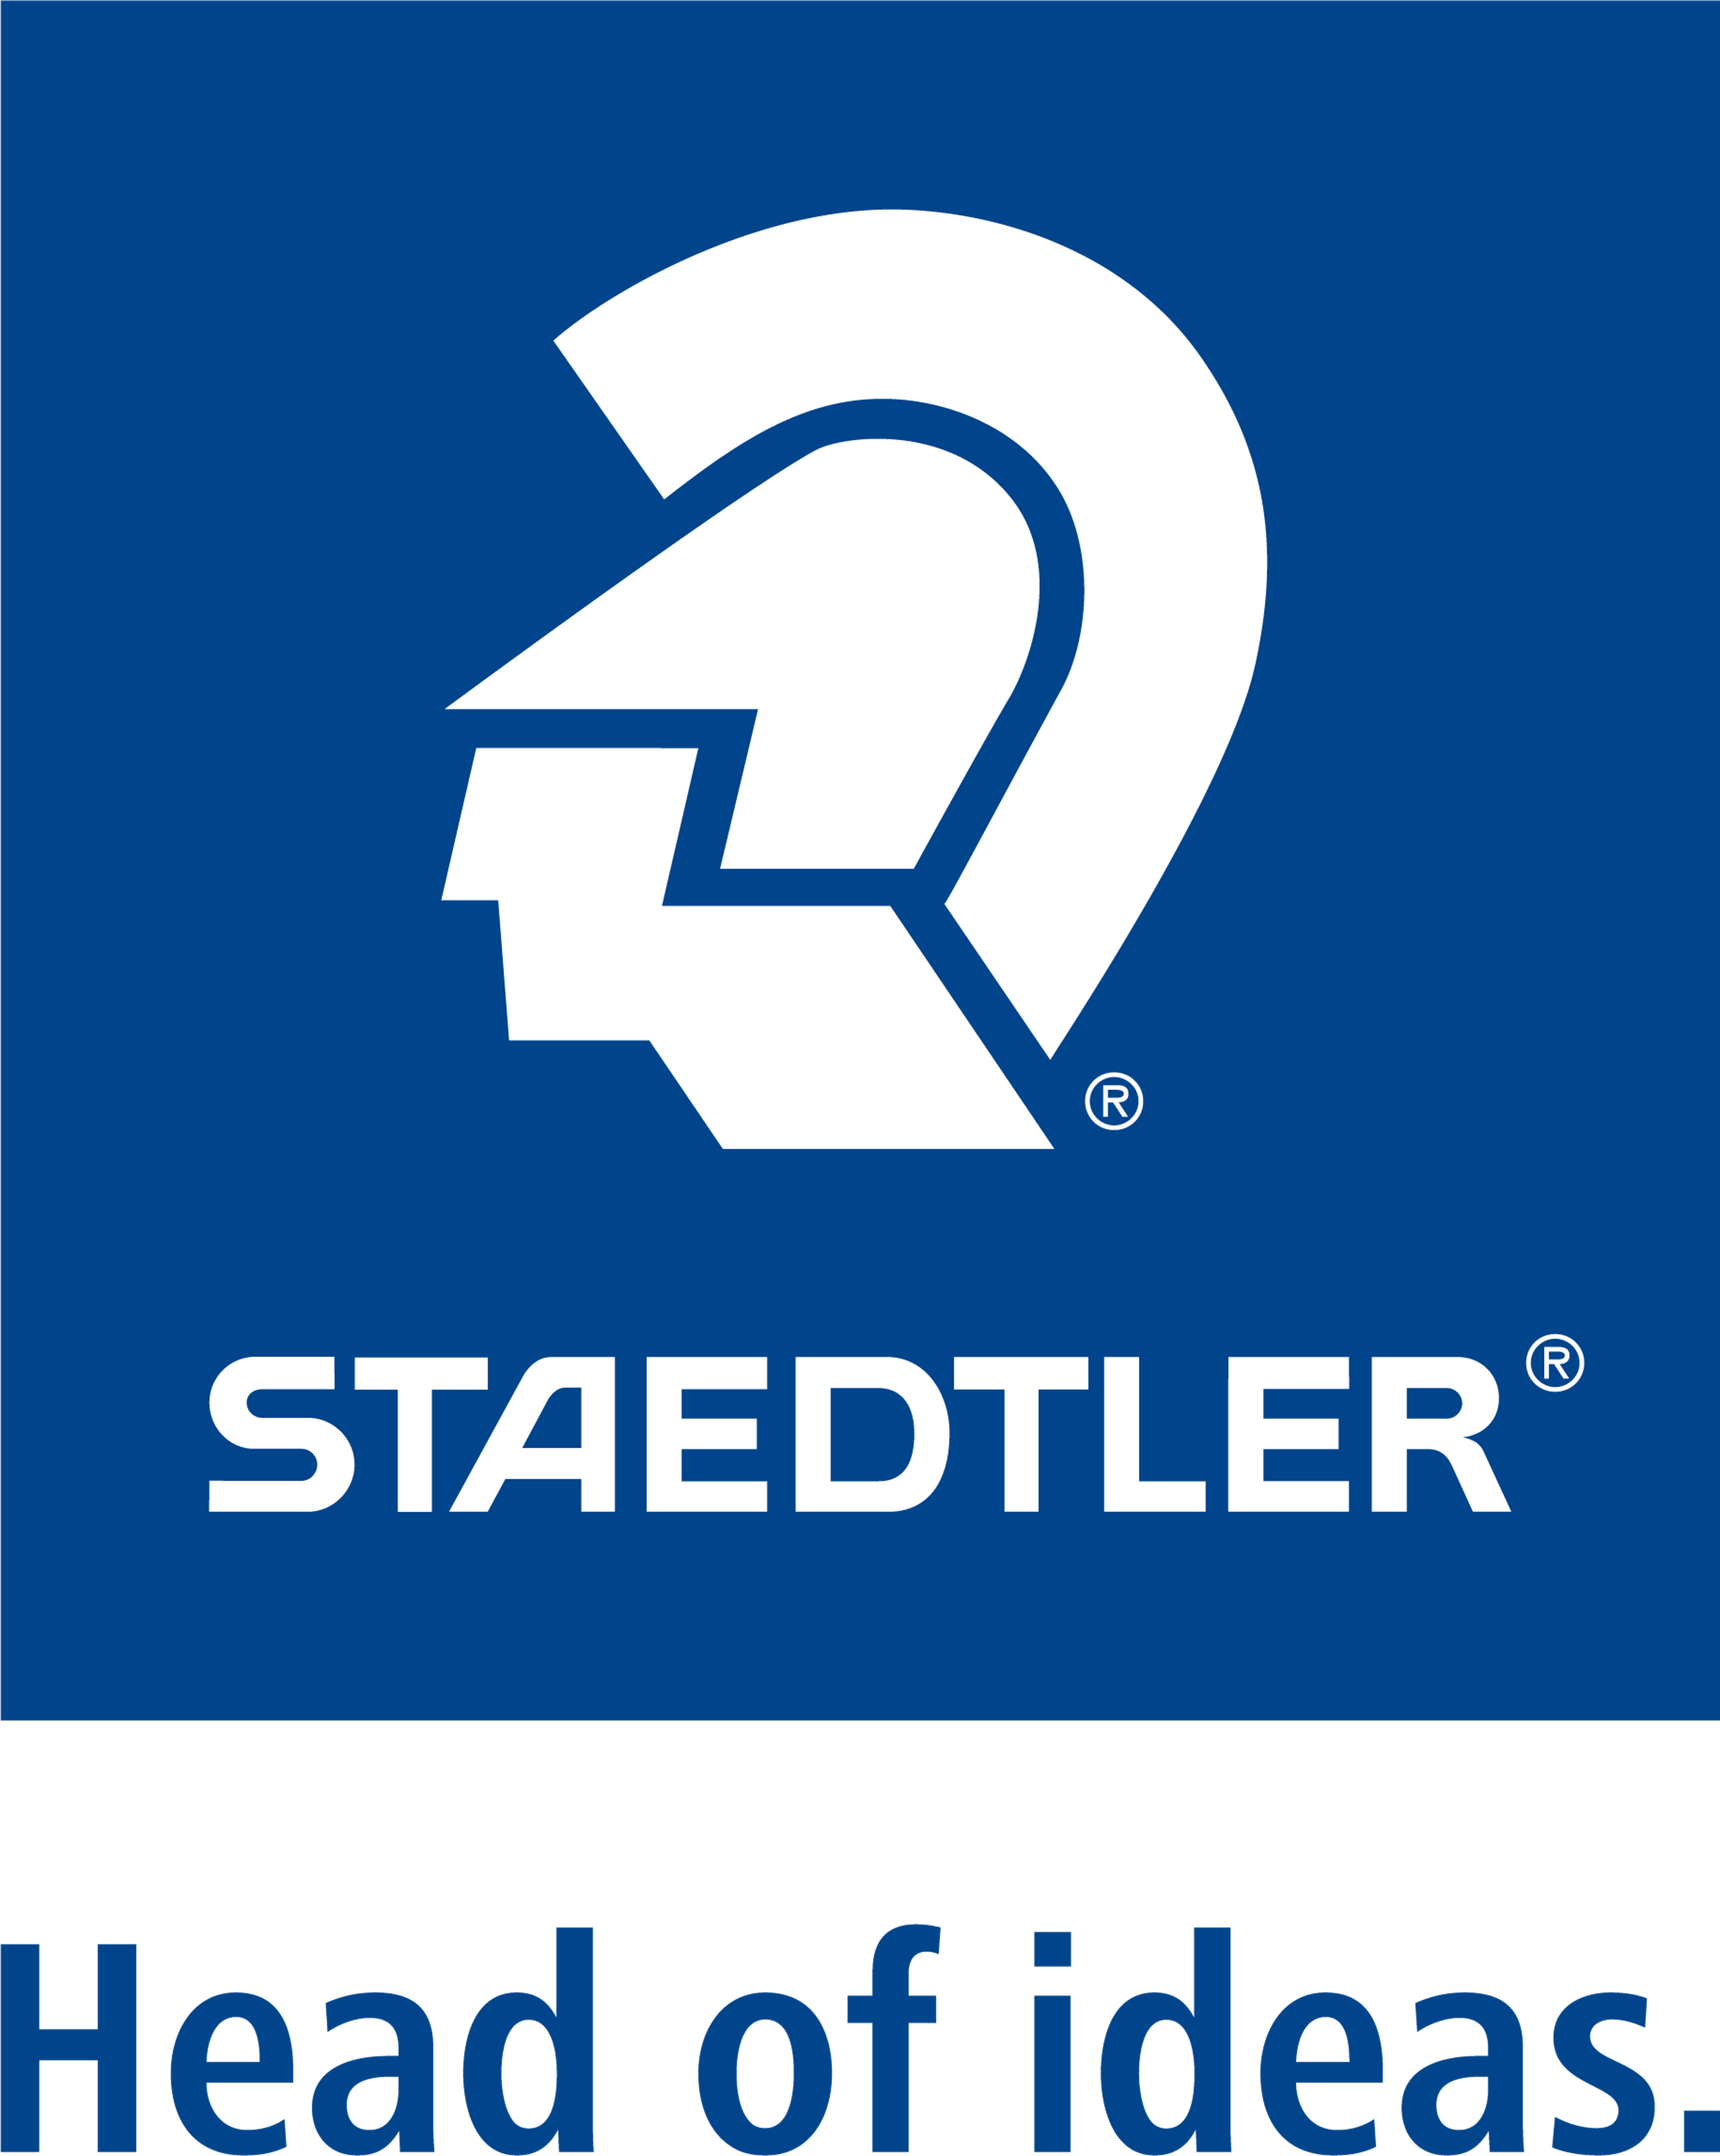 STAEDTLER logotype